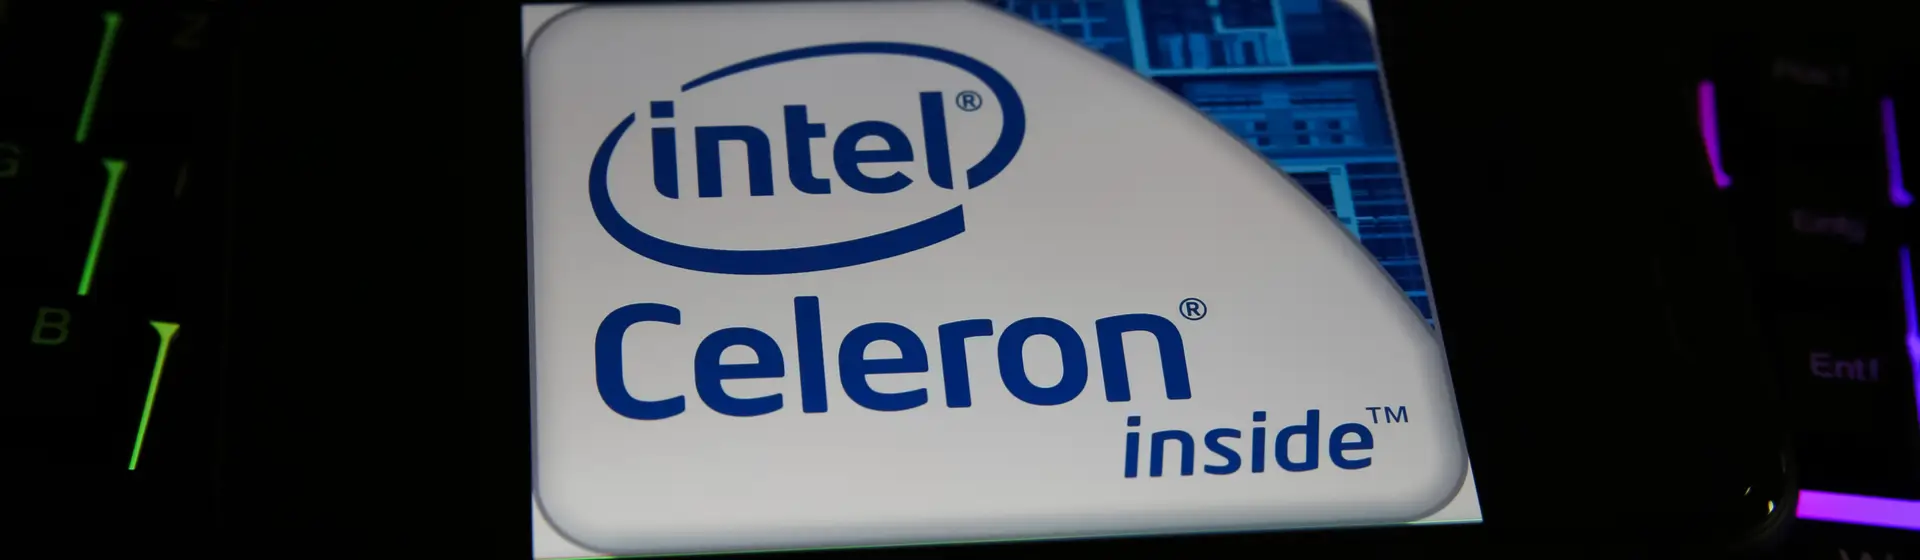 Processador Intel Celeron é bom? Conheça a linha e principais modelos